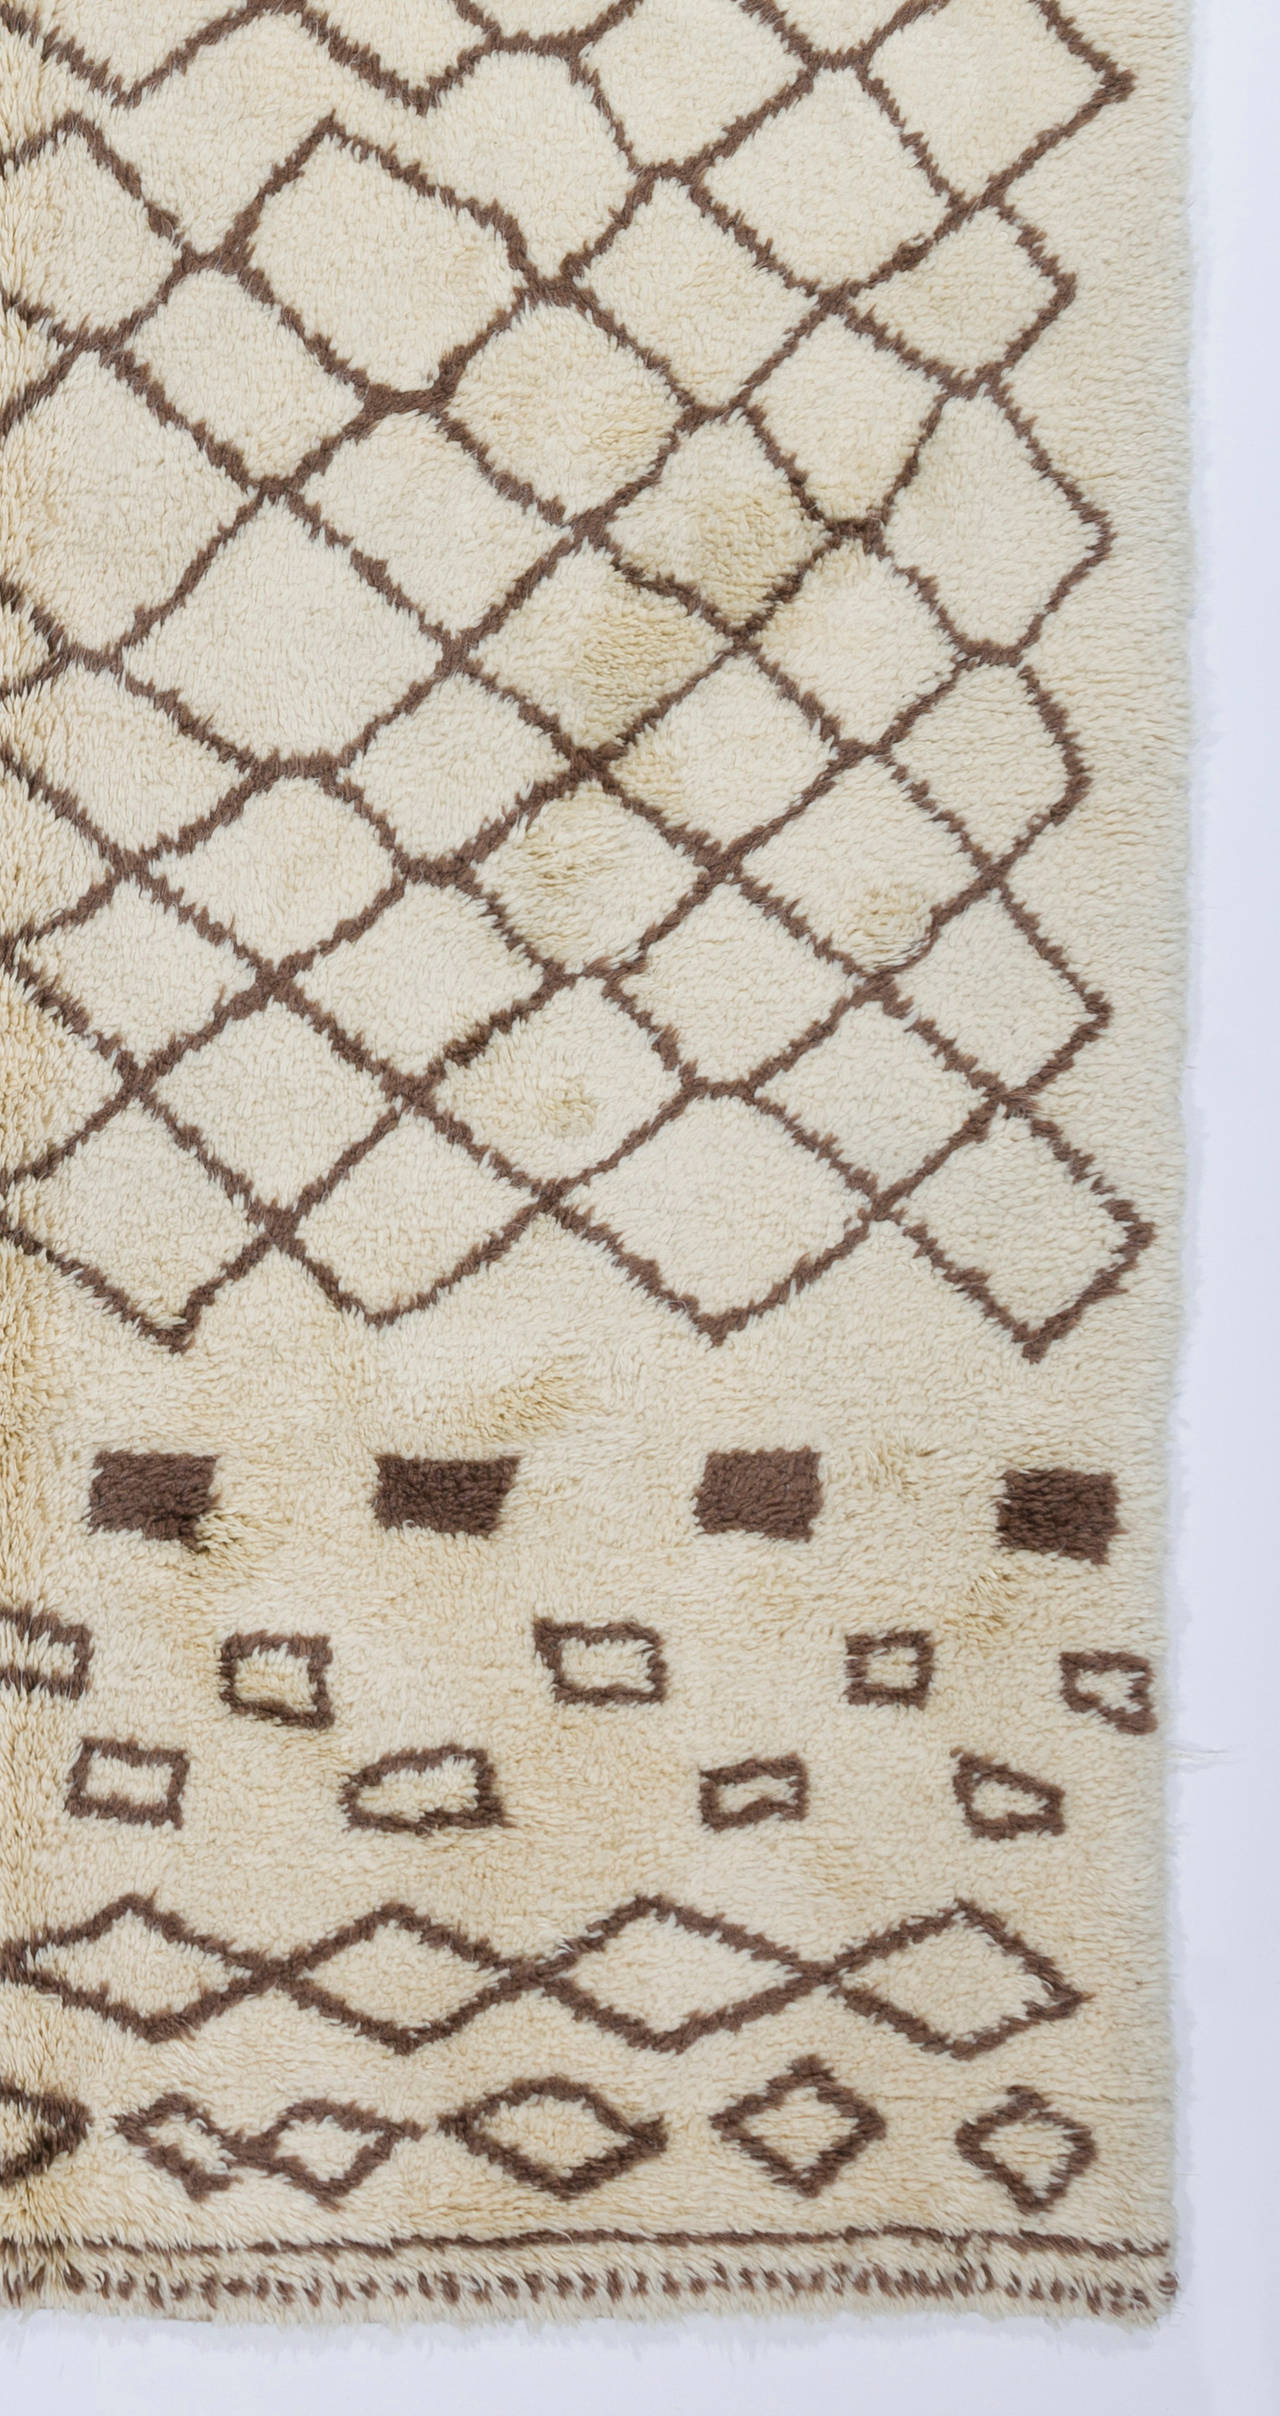 Ein neuer handgefertigter Teppich aus natürlicher, handgesponnener, ungefärbter cremefarbener und brauner Schafwolle. 

Der Teppich kann in jeder Größe, Farbe, jedem Muster, jeder Webart und jedem Design innerhalb von ca. 5 Wochen angefertigt